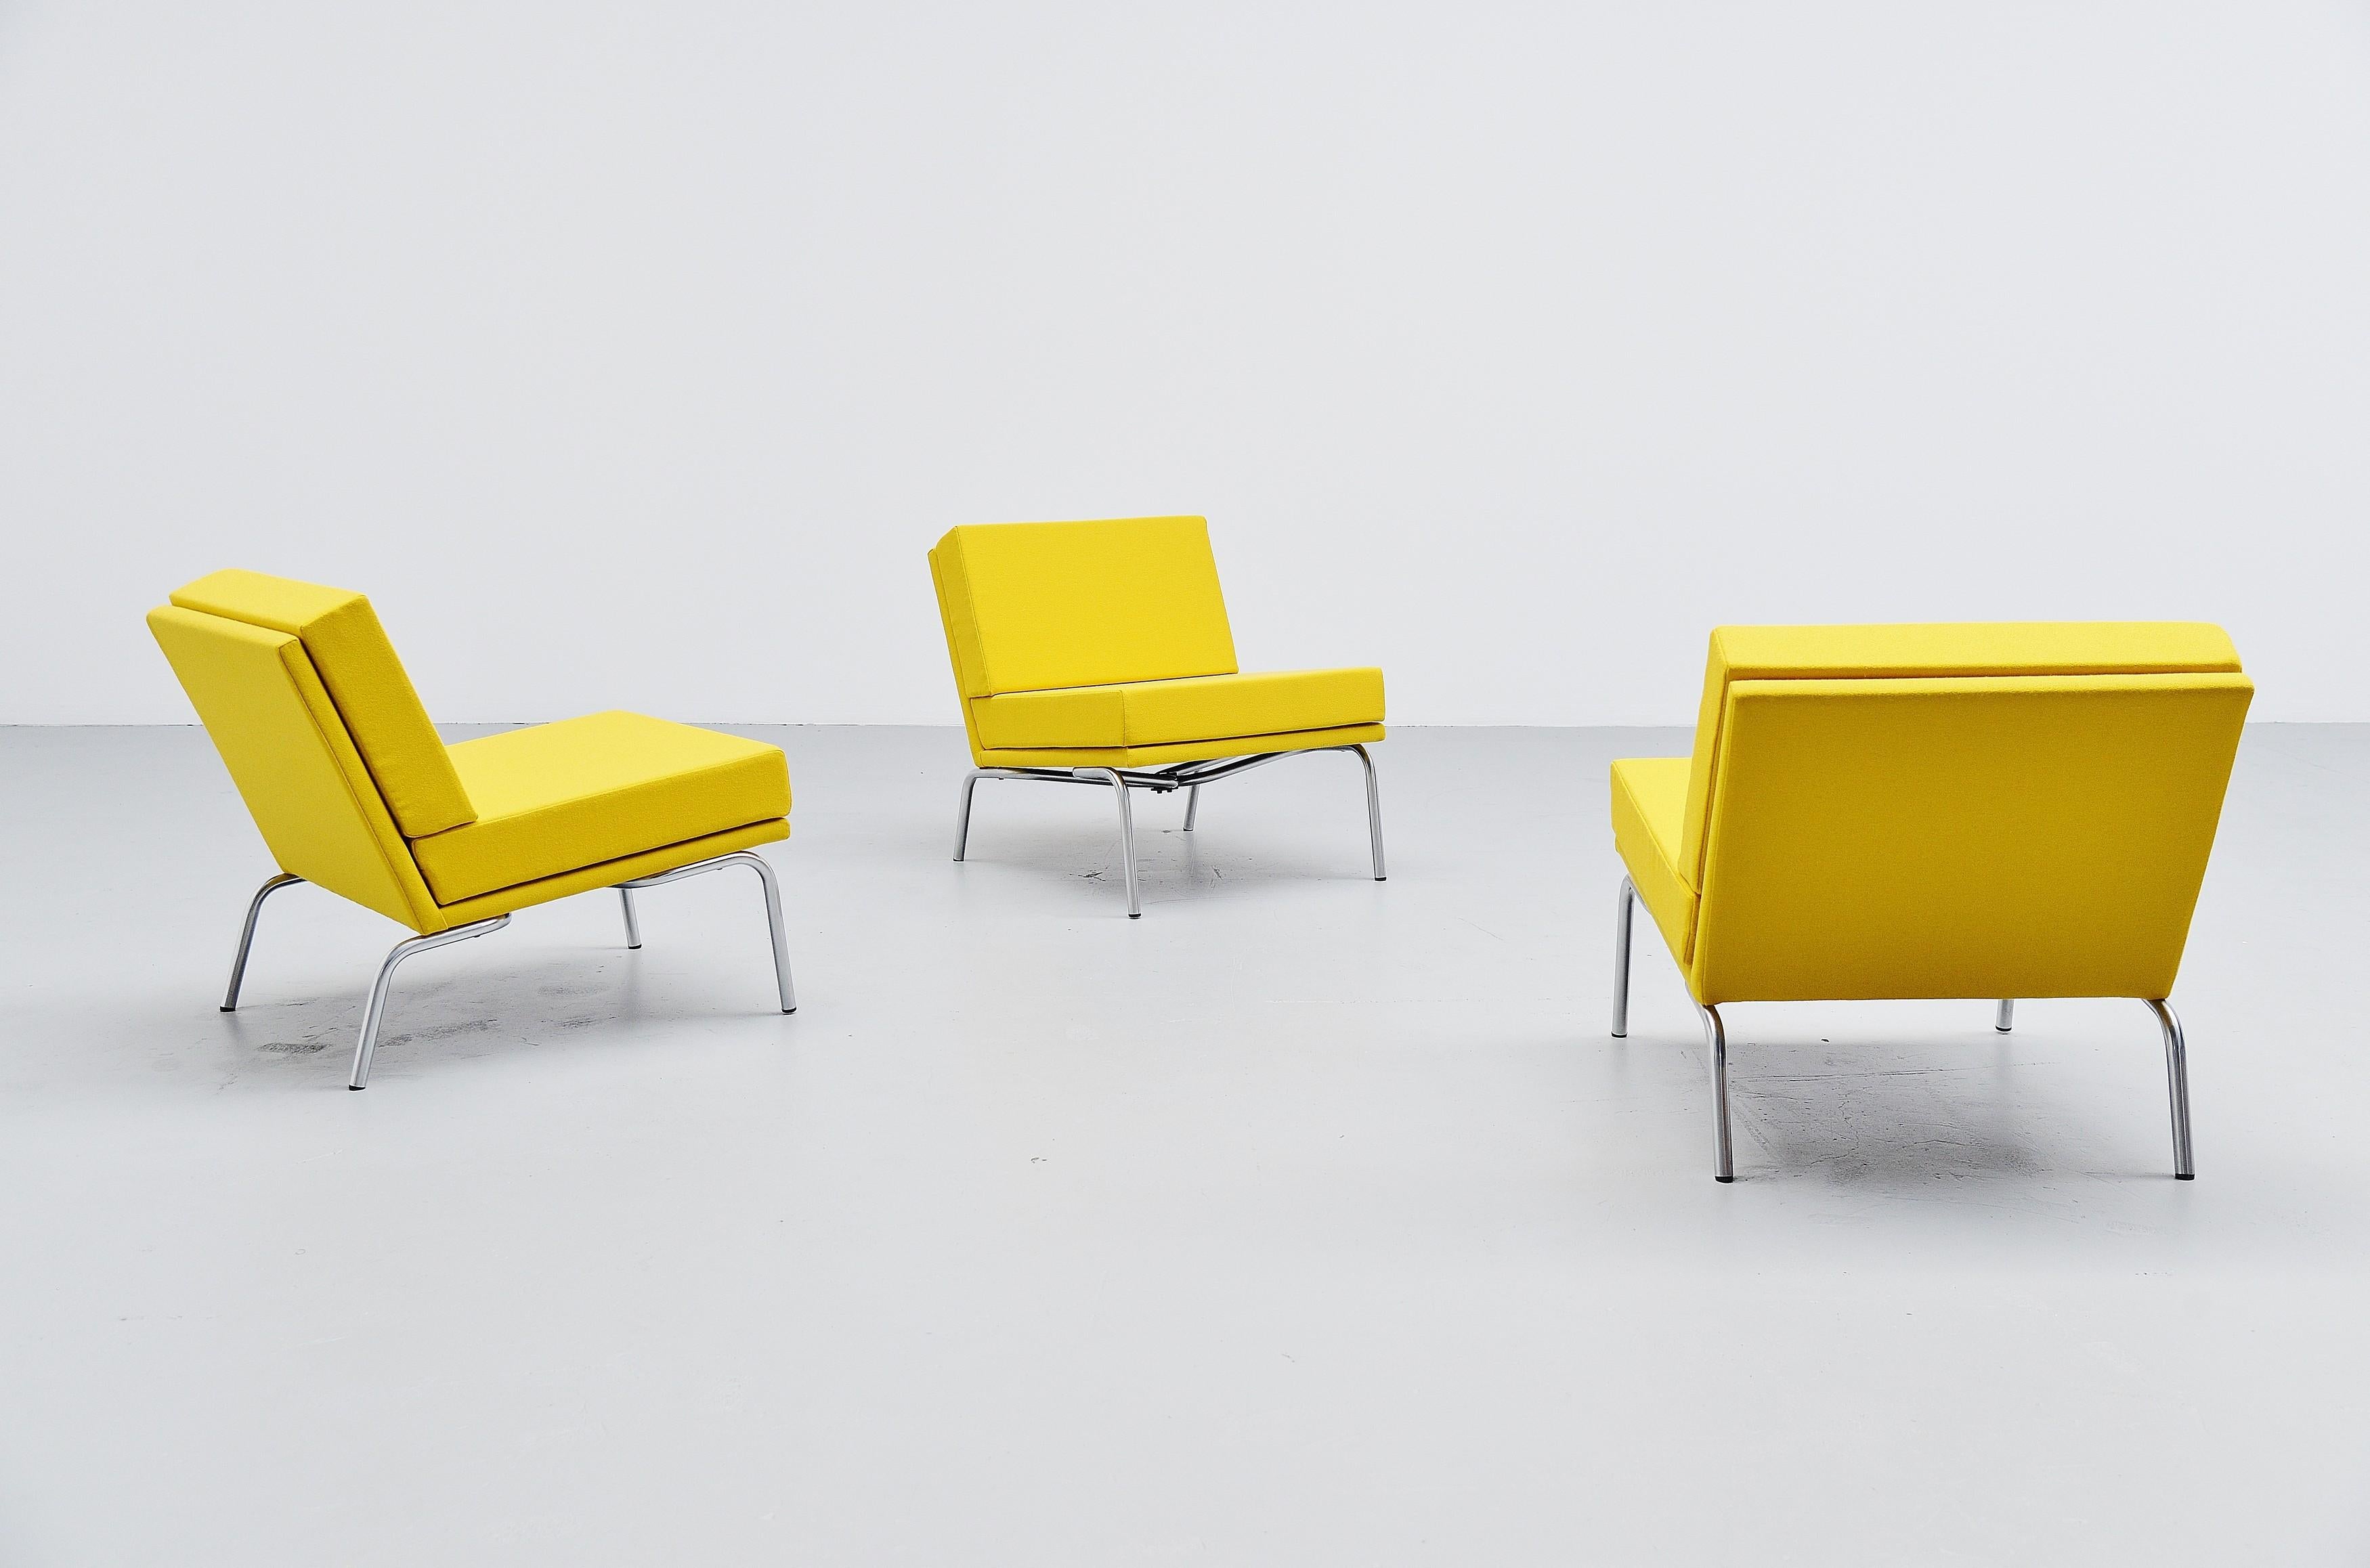 Seltener Satz von 3 Sesseln, Modell SZ04, entworfen von Martin Visser und hergestellt von 't Spectrum, Niederlande 1964. Diese Loungesessel können zur Seite gestellt werden, so dass sie auch als modulares Sofasystem verwendet werden können. Dieses